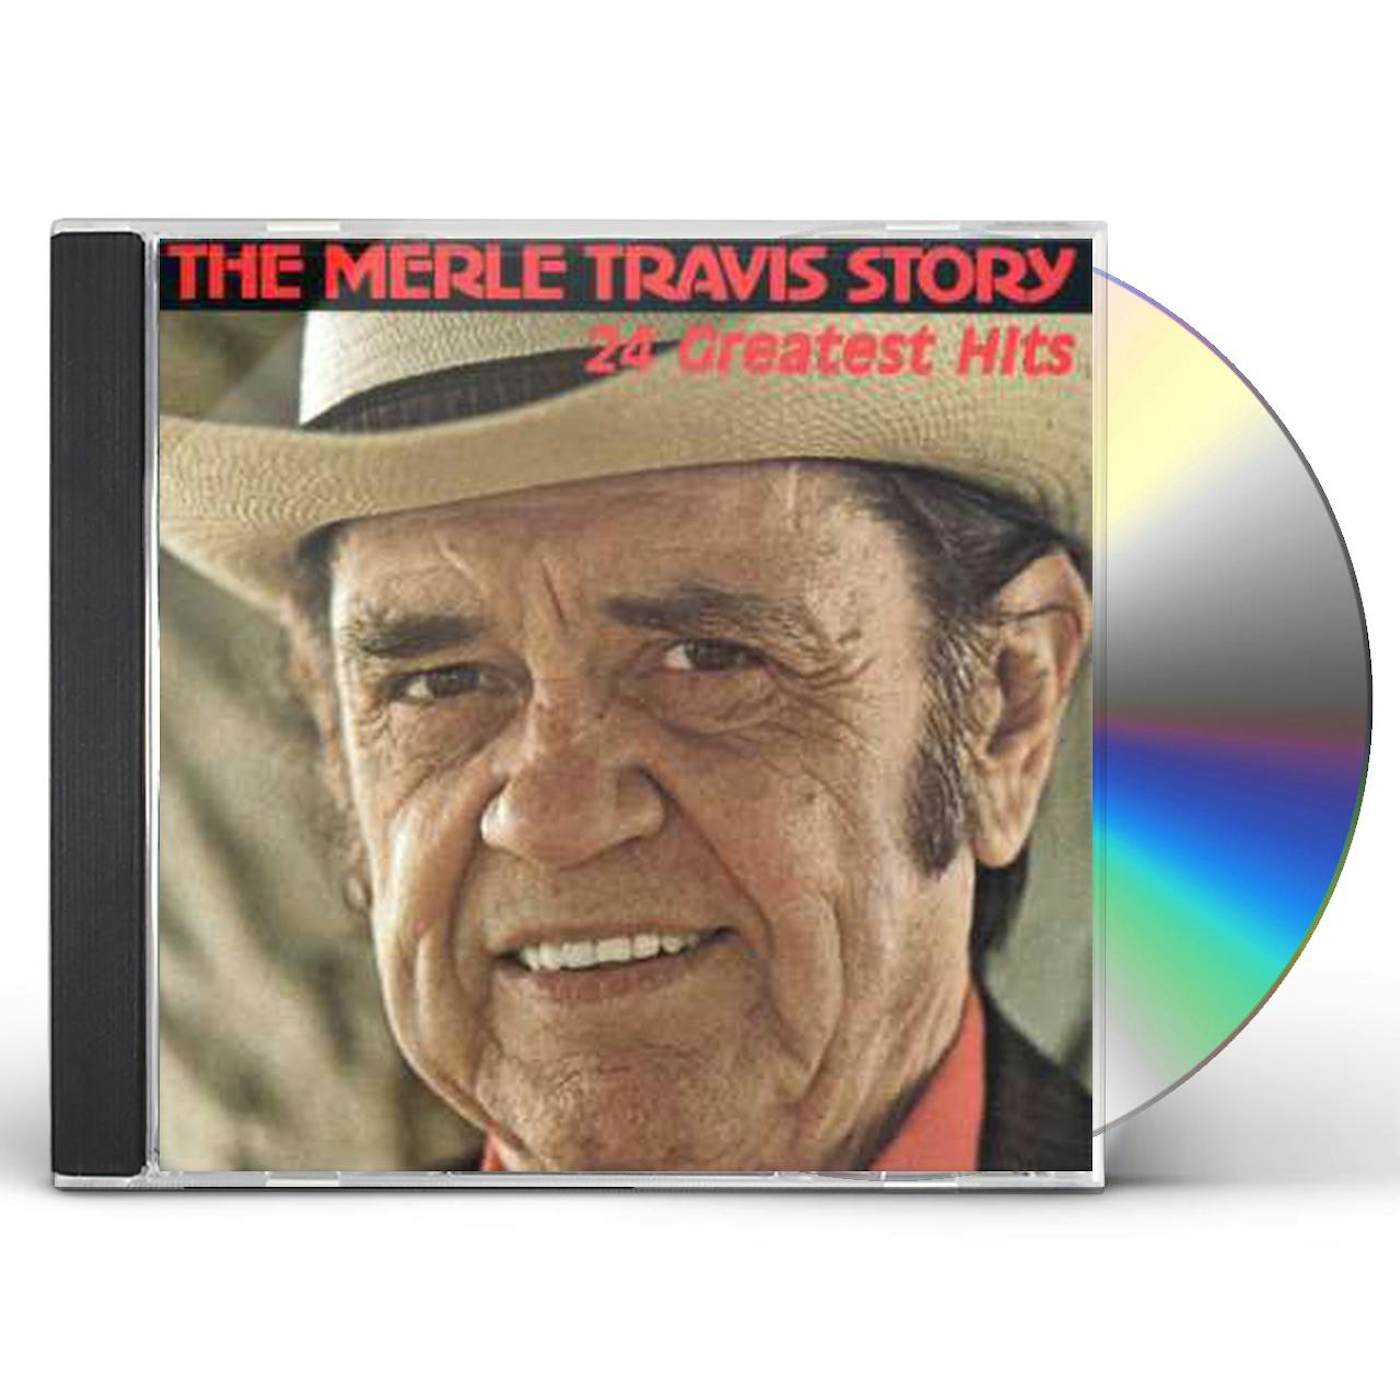 MERLE TRAVIS STORY CD